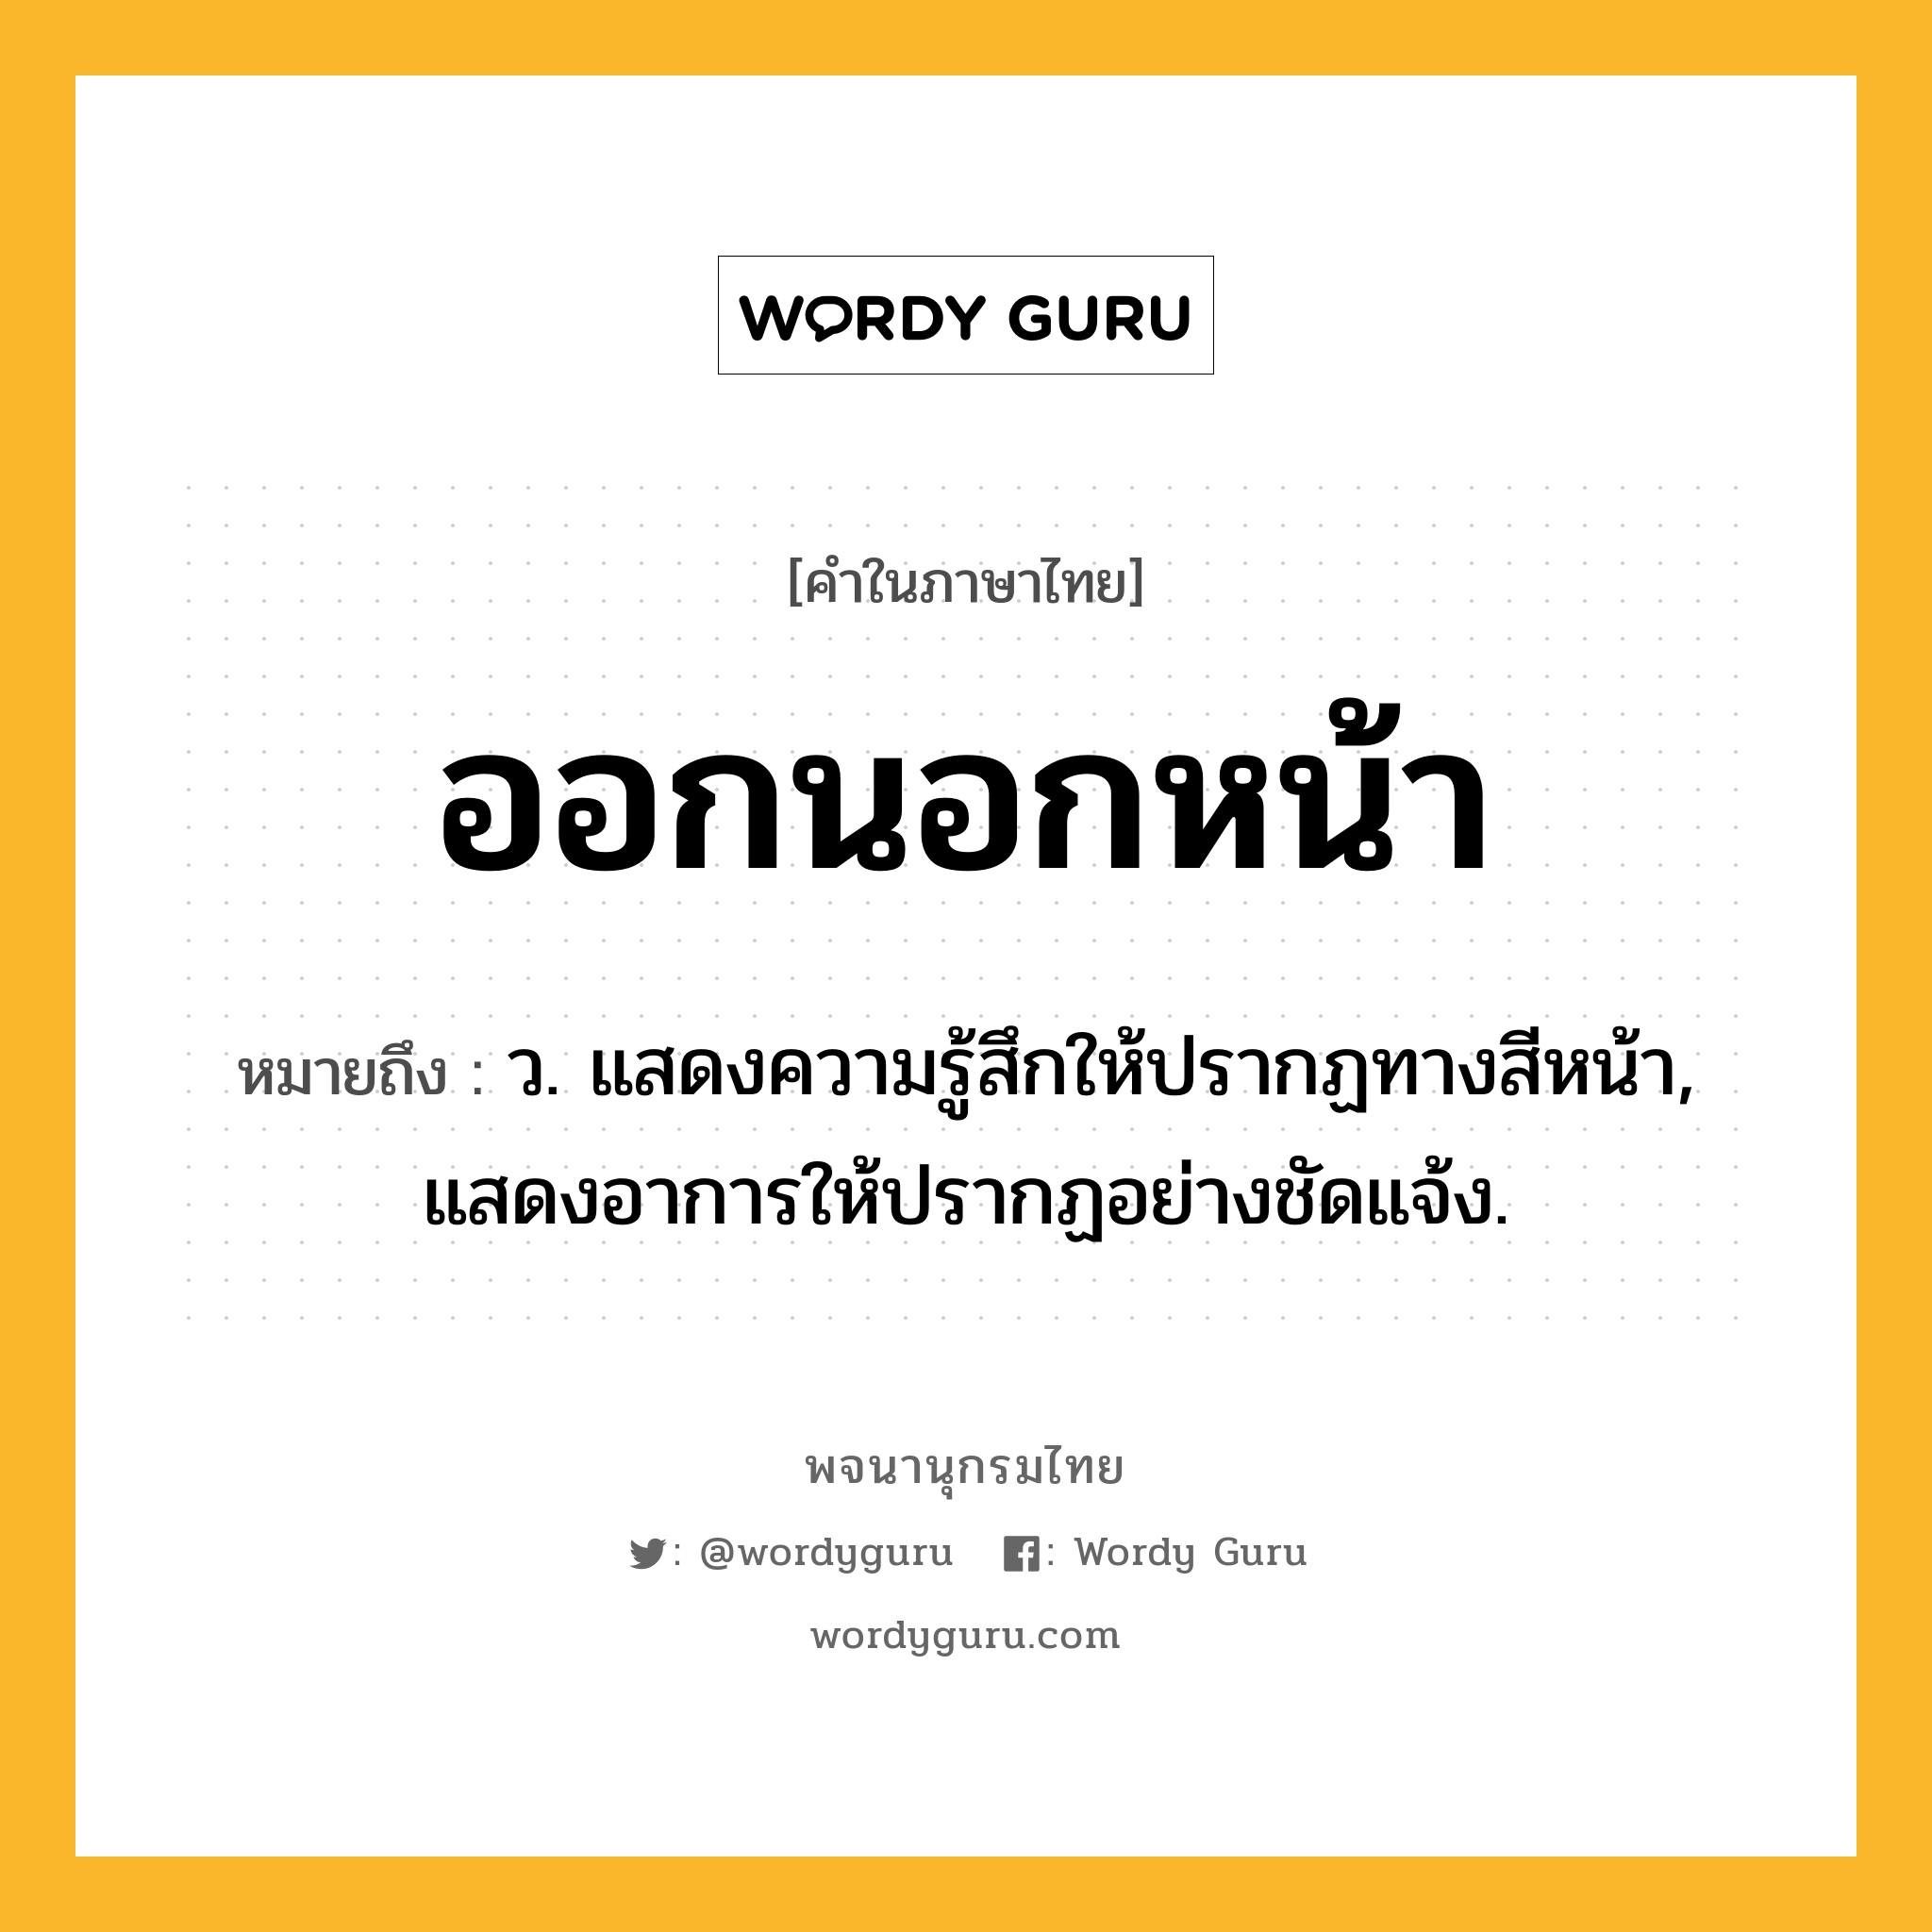 ออกนอกหน้า หมายถึงอะไร?, คำในภาษาไทย ออกนอกหน้า หมายถึง ว. แสดงความรู้สึกให้ปรากฏทางสีหน้า, แสดงอาการให้ปรากฏอย่างชัดแจ้ง.